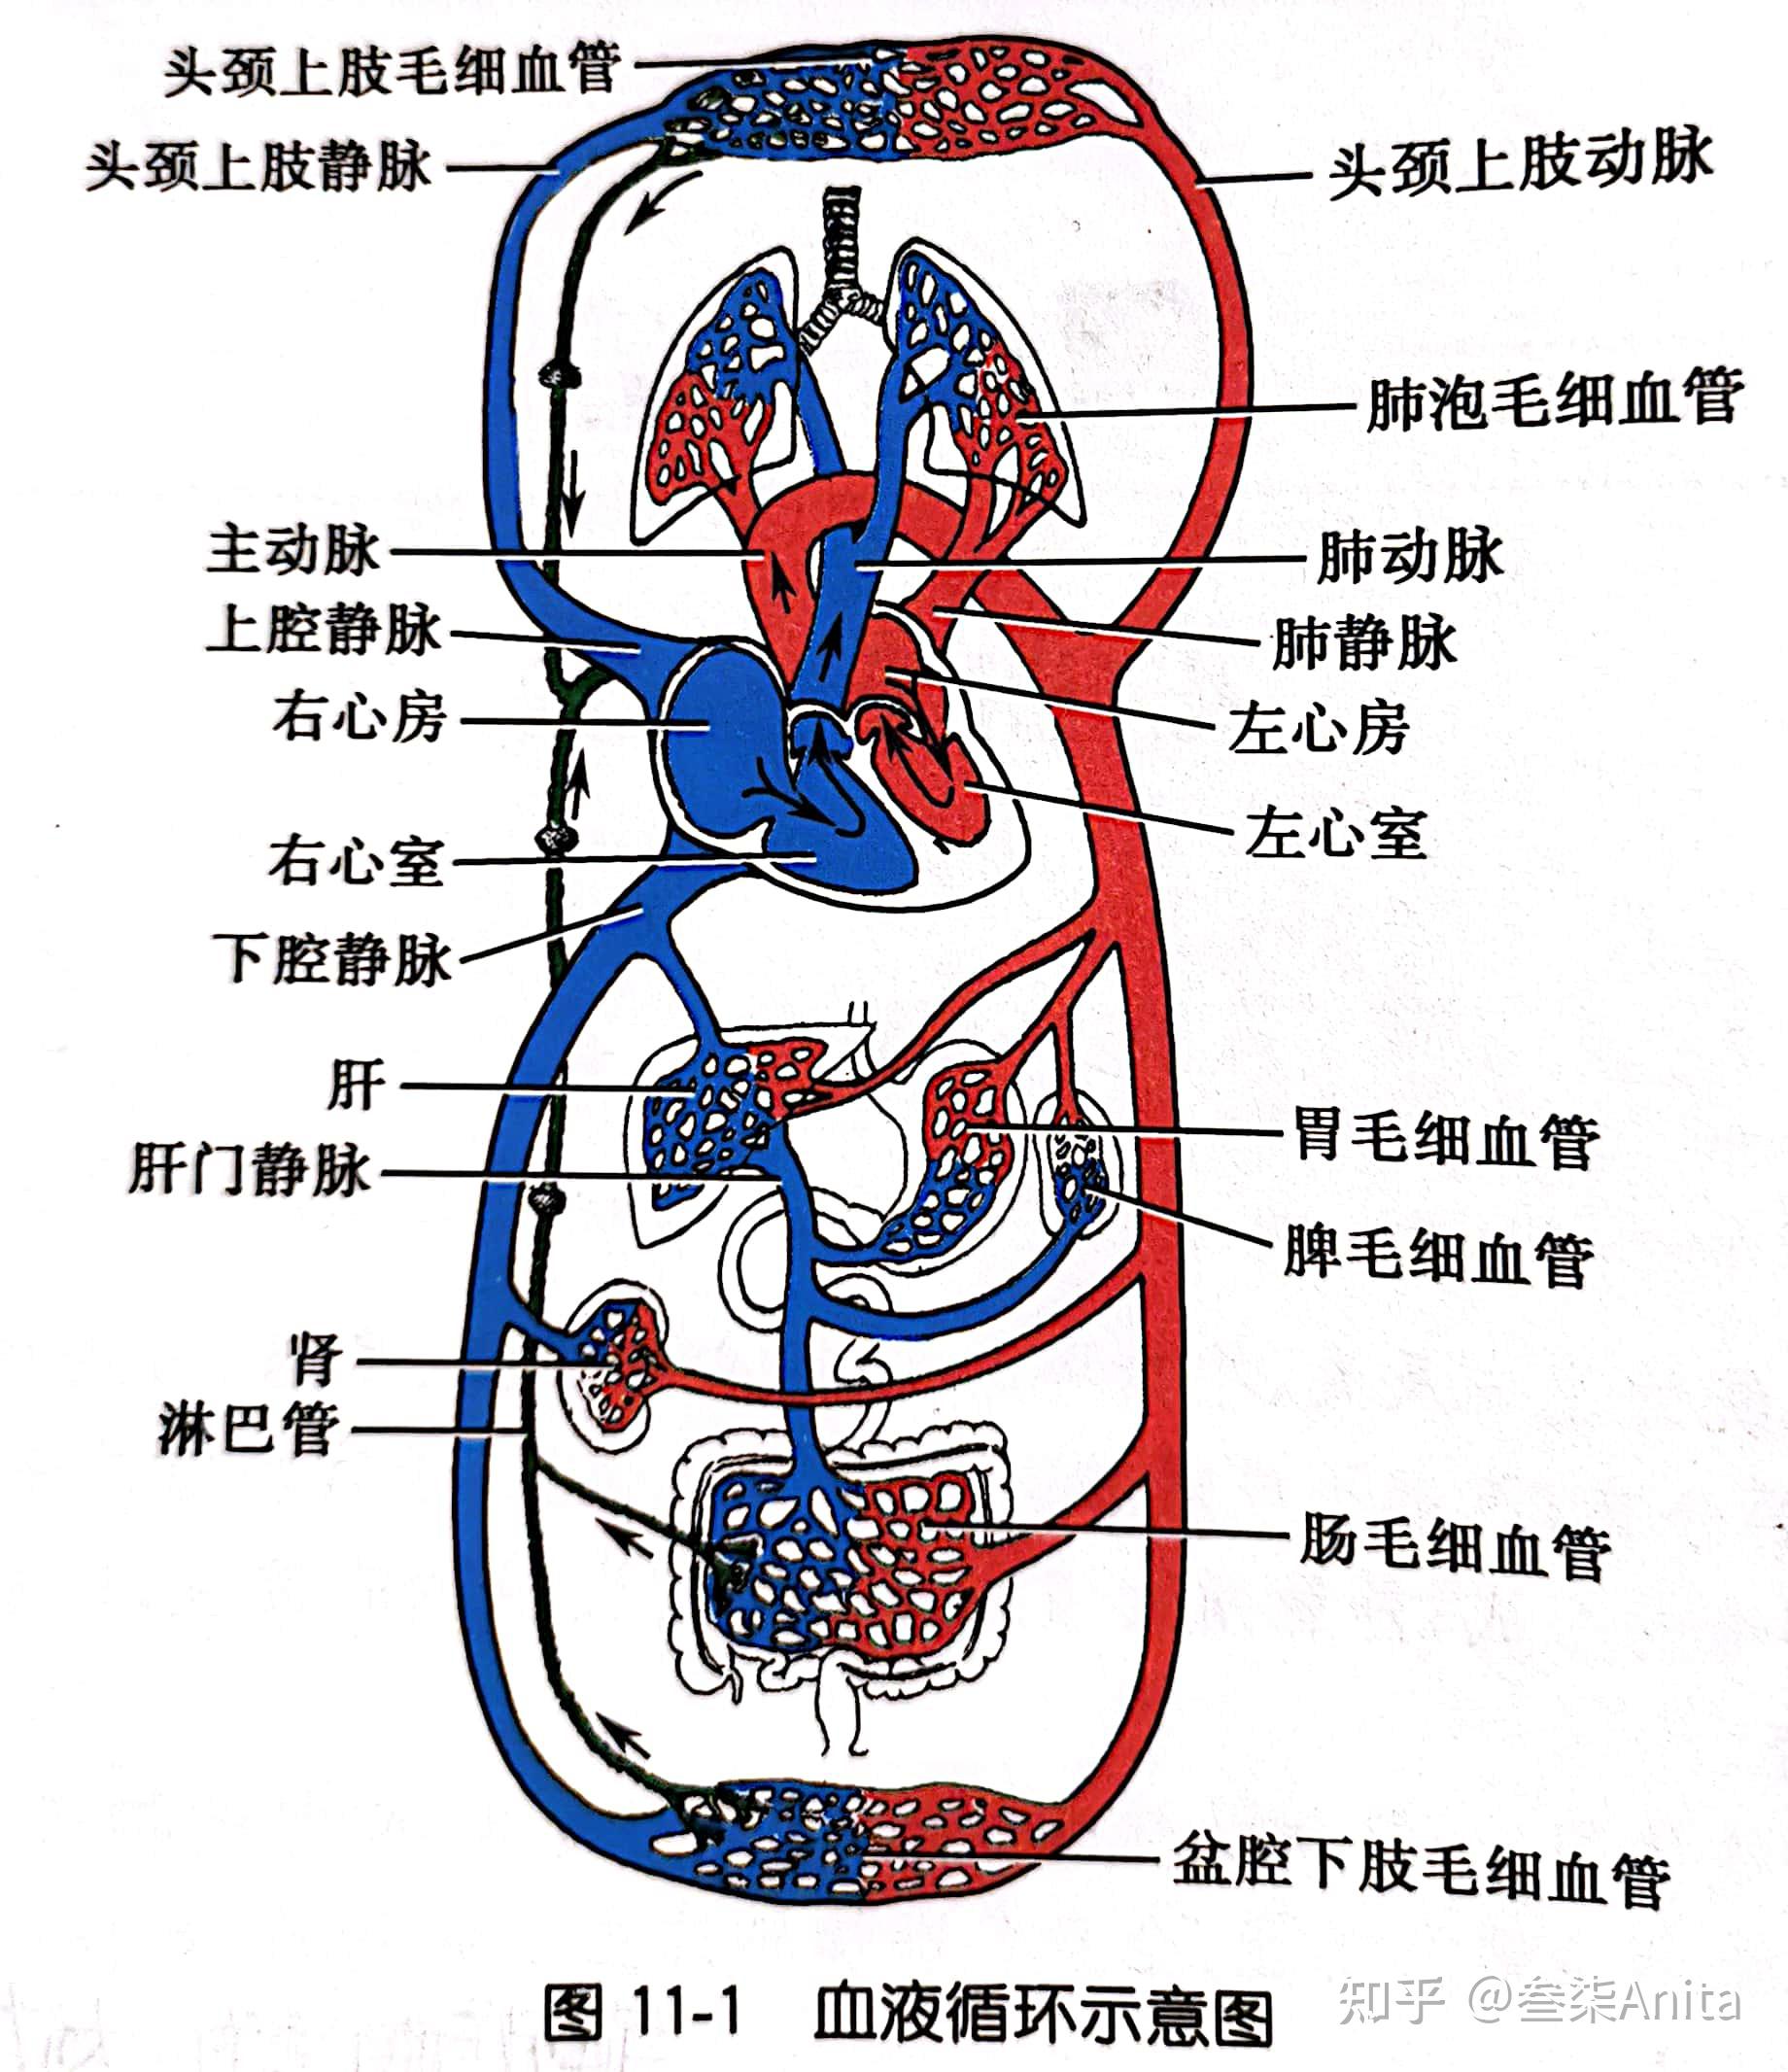 肺循环(小循环)和体循环(大循环)